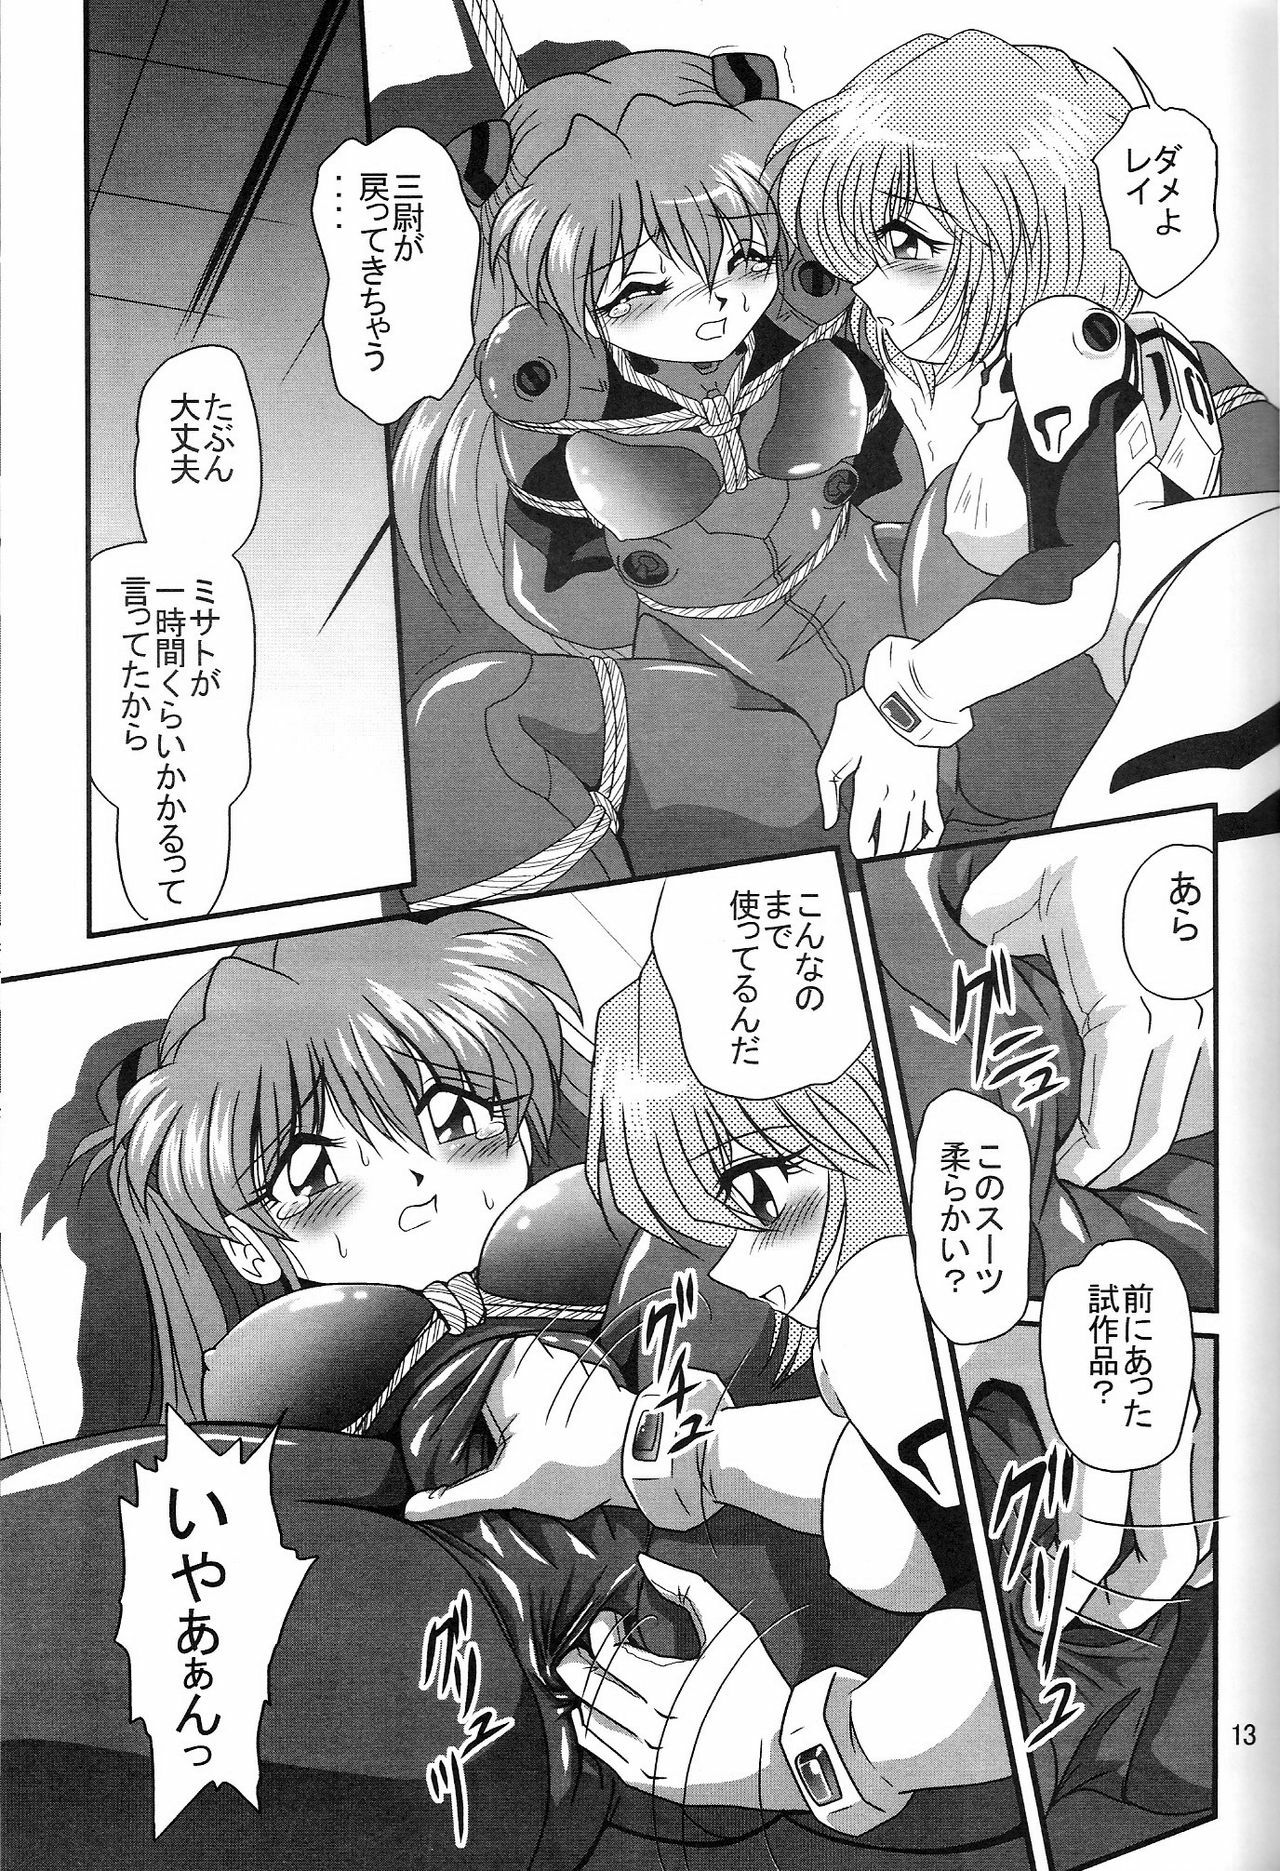 (COMIC1) [Thirty Saver Street 2D Shooting (Maki Hideto, Sawara Kazumitsu, Yonige-ya No Kyou)] Second Uchuu Keikaku 2 (Neon Genesis Evangelion) page 13 full